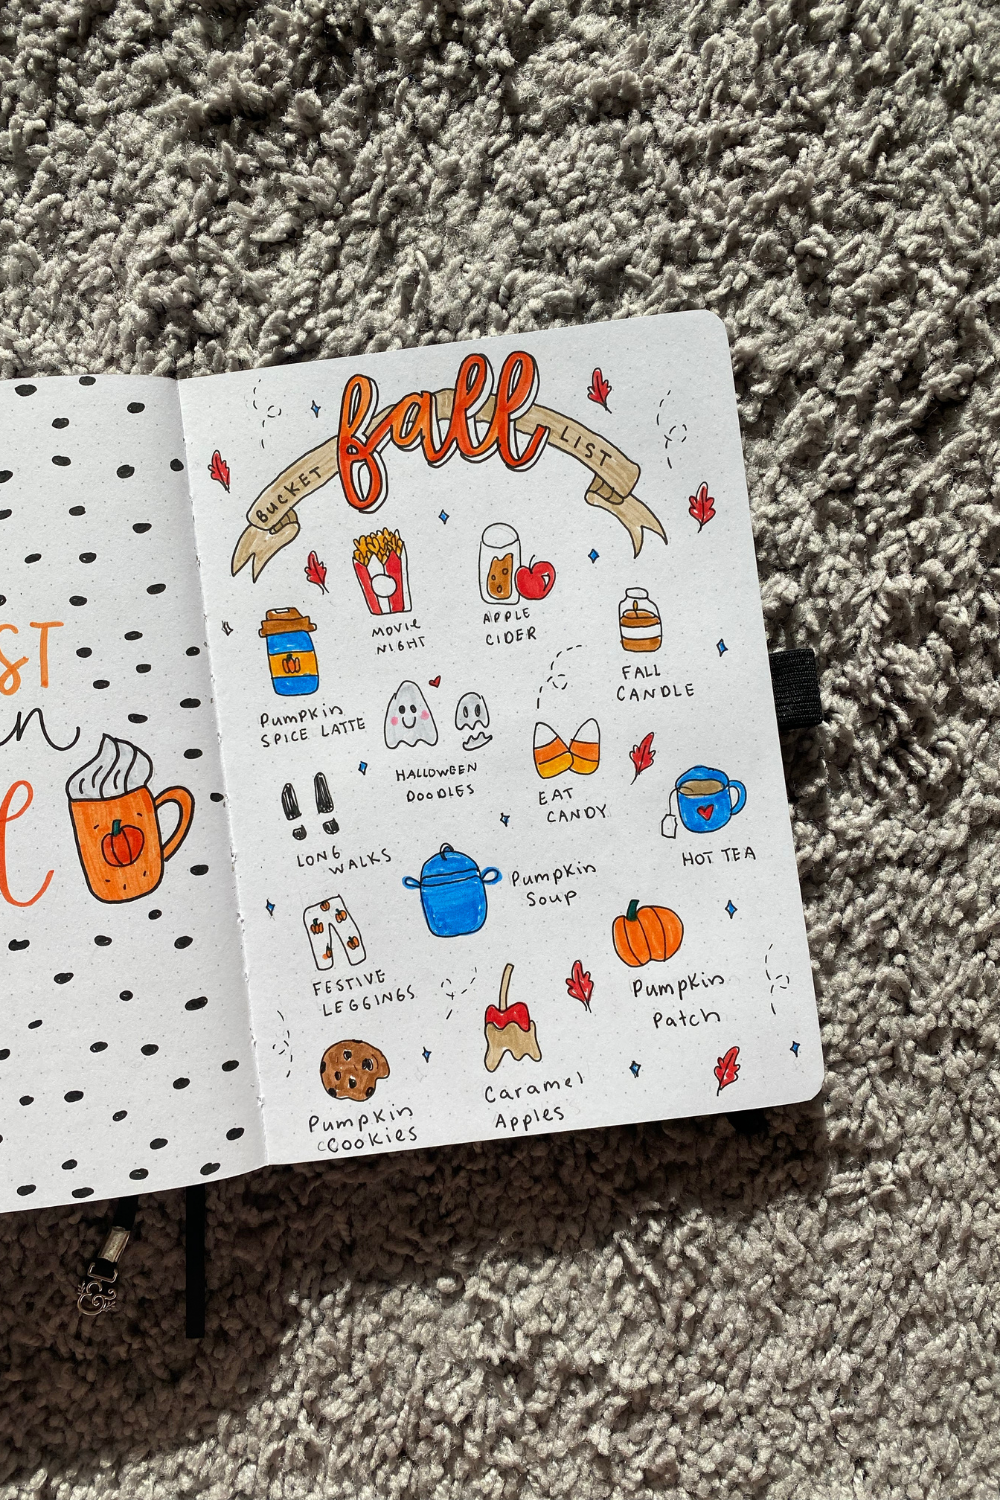 October Bullet Journal Ideas - Pumpkin Spice Theme — Sunflower